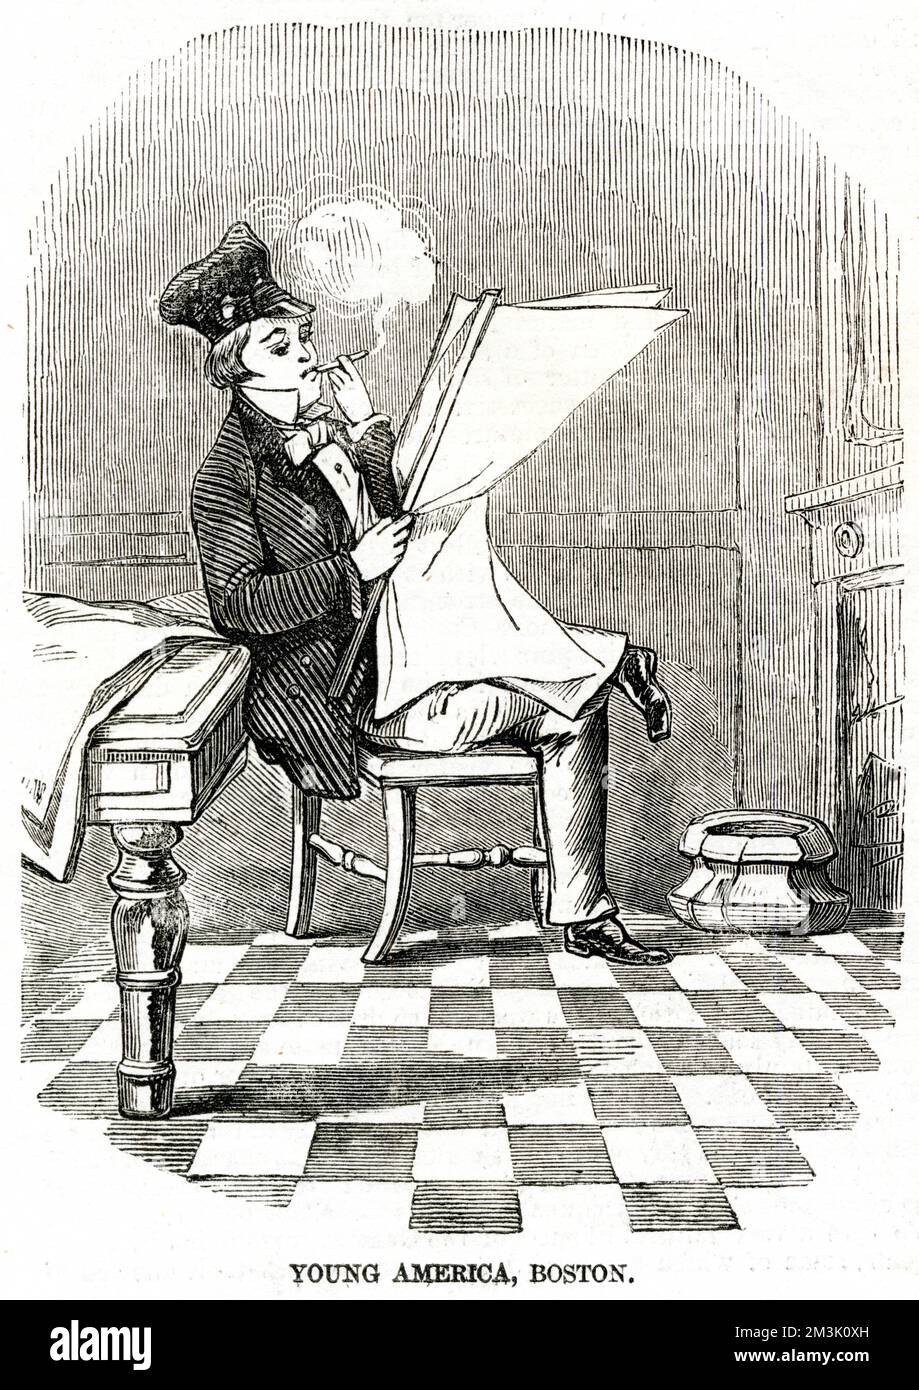 Un jeune tablier qui fume un cheroot et qui lit les dernières nouvelles, Boston, 1856. "Jeune Amérique" était le nom d'un mouvement démocratique lancé aux Etats-Unis dans les années 1830. Date: 1856 Banque D'Images